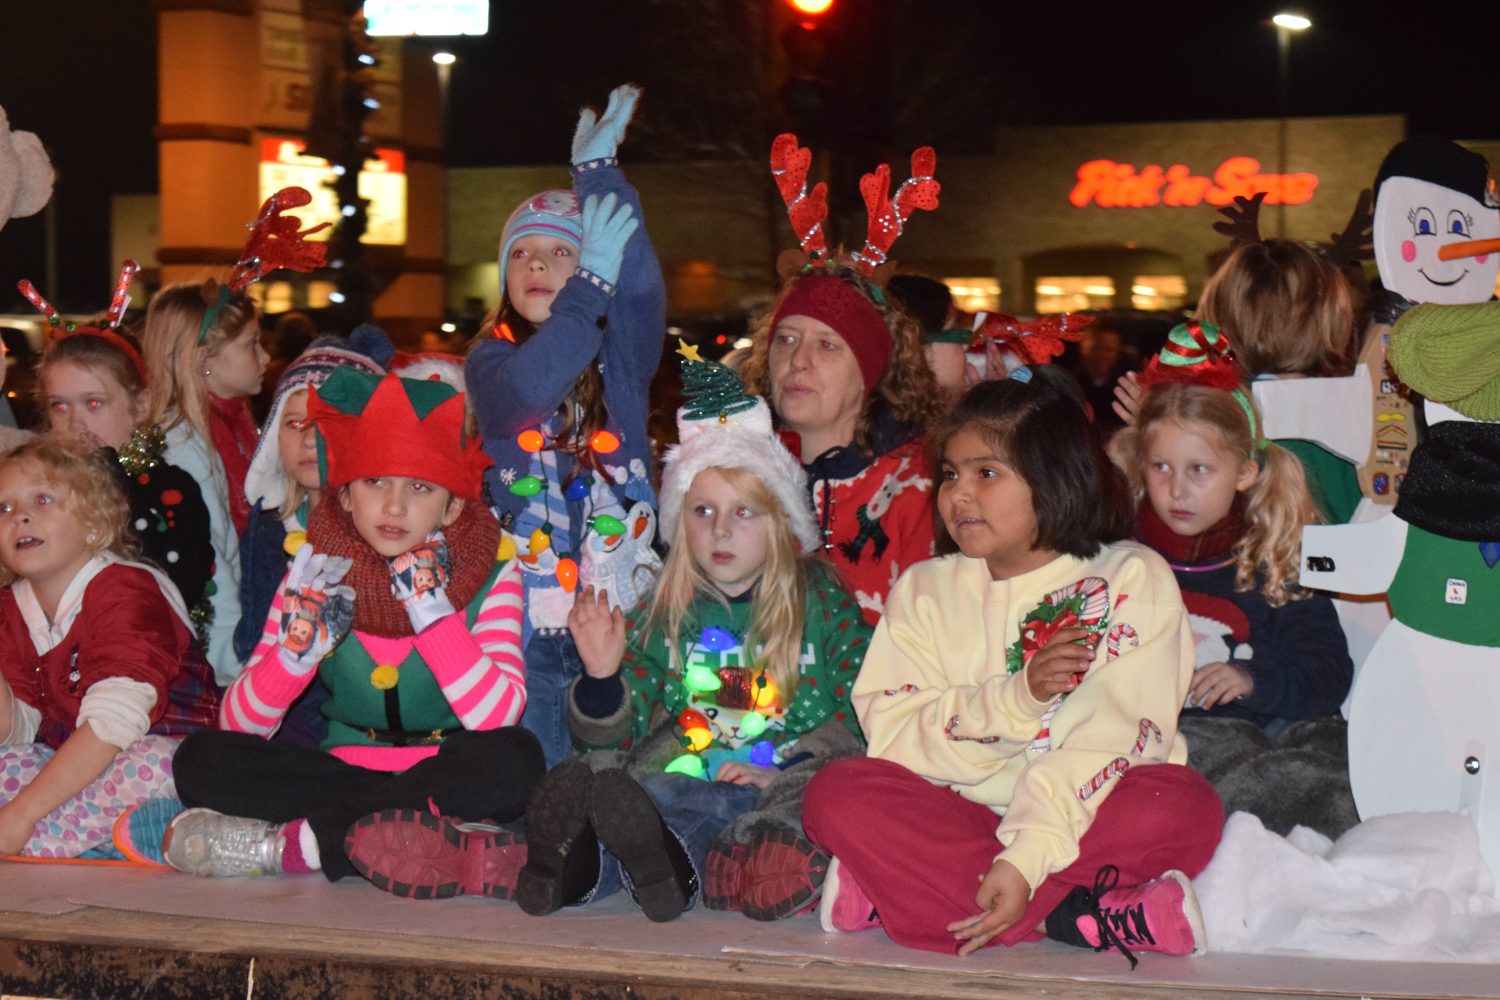 Main Street Marshfield's Holiday Parade was held Nov. 17.